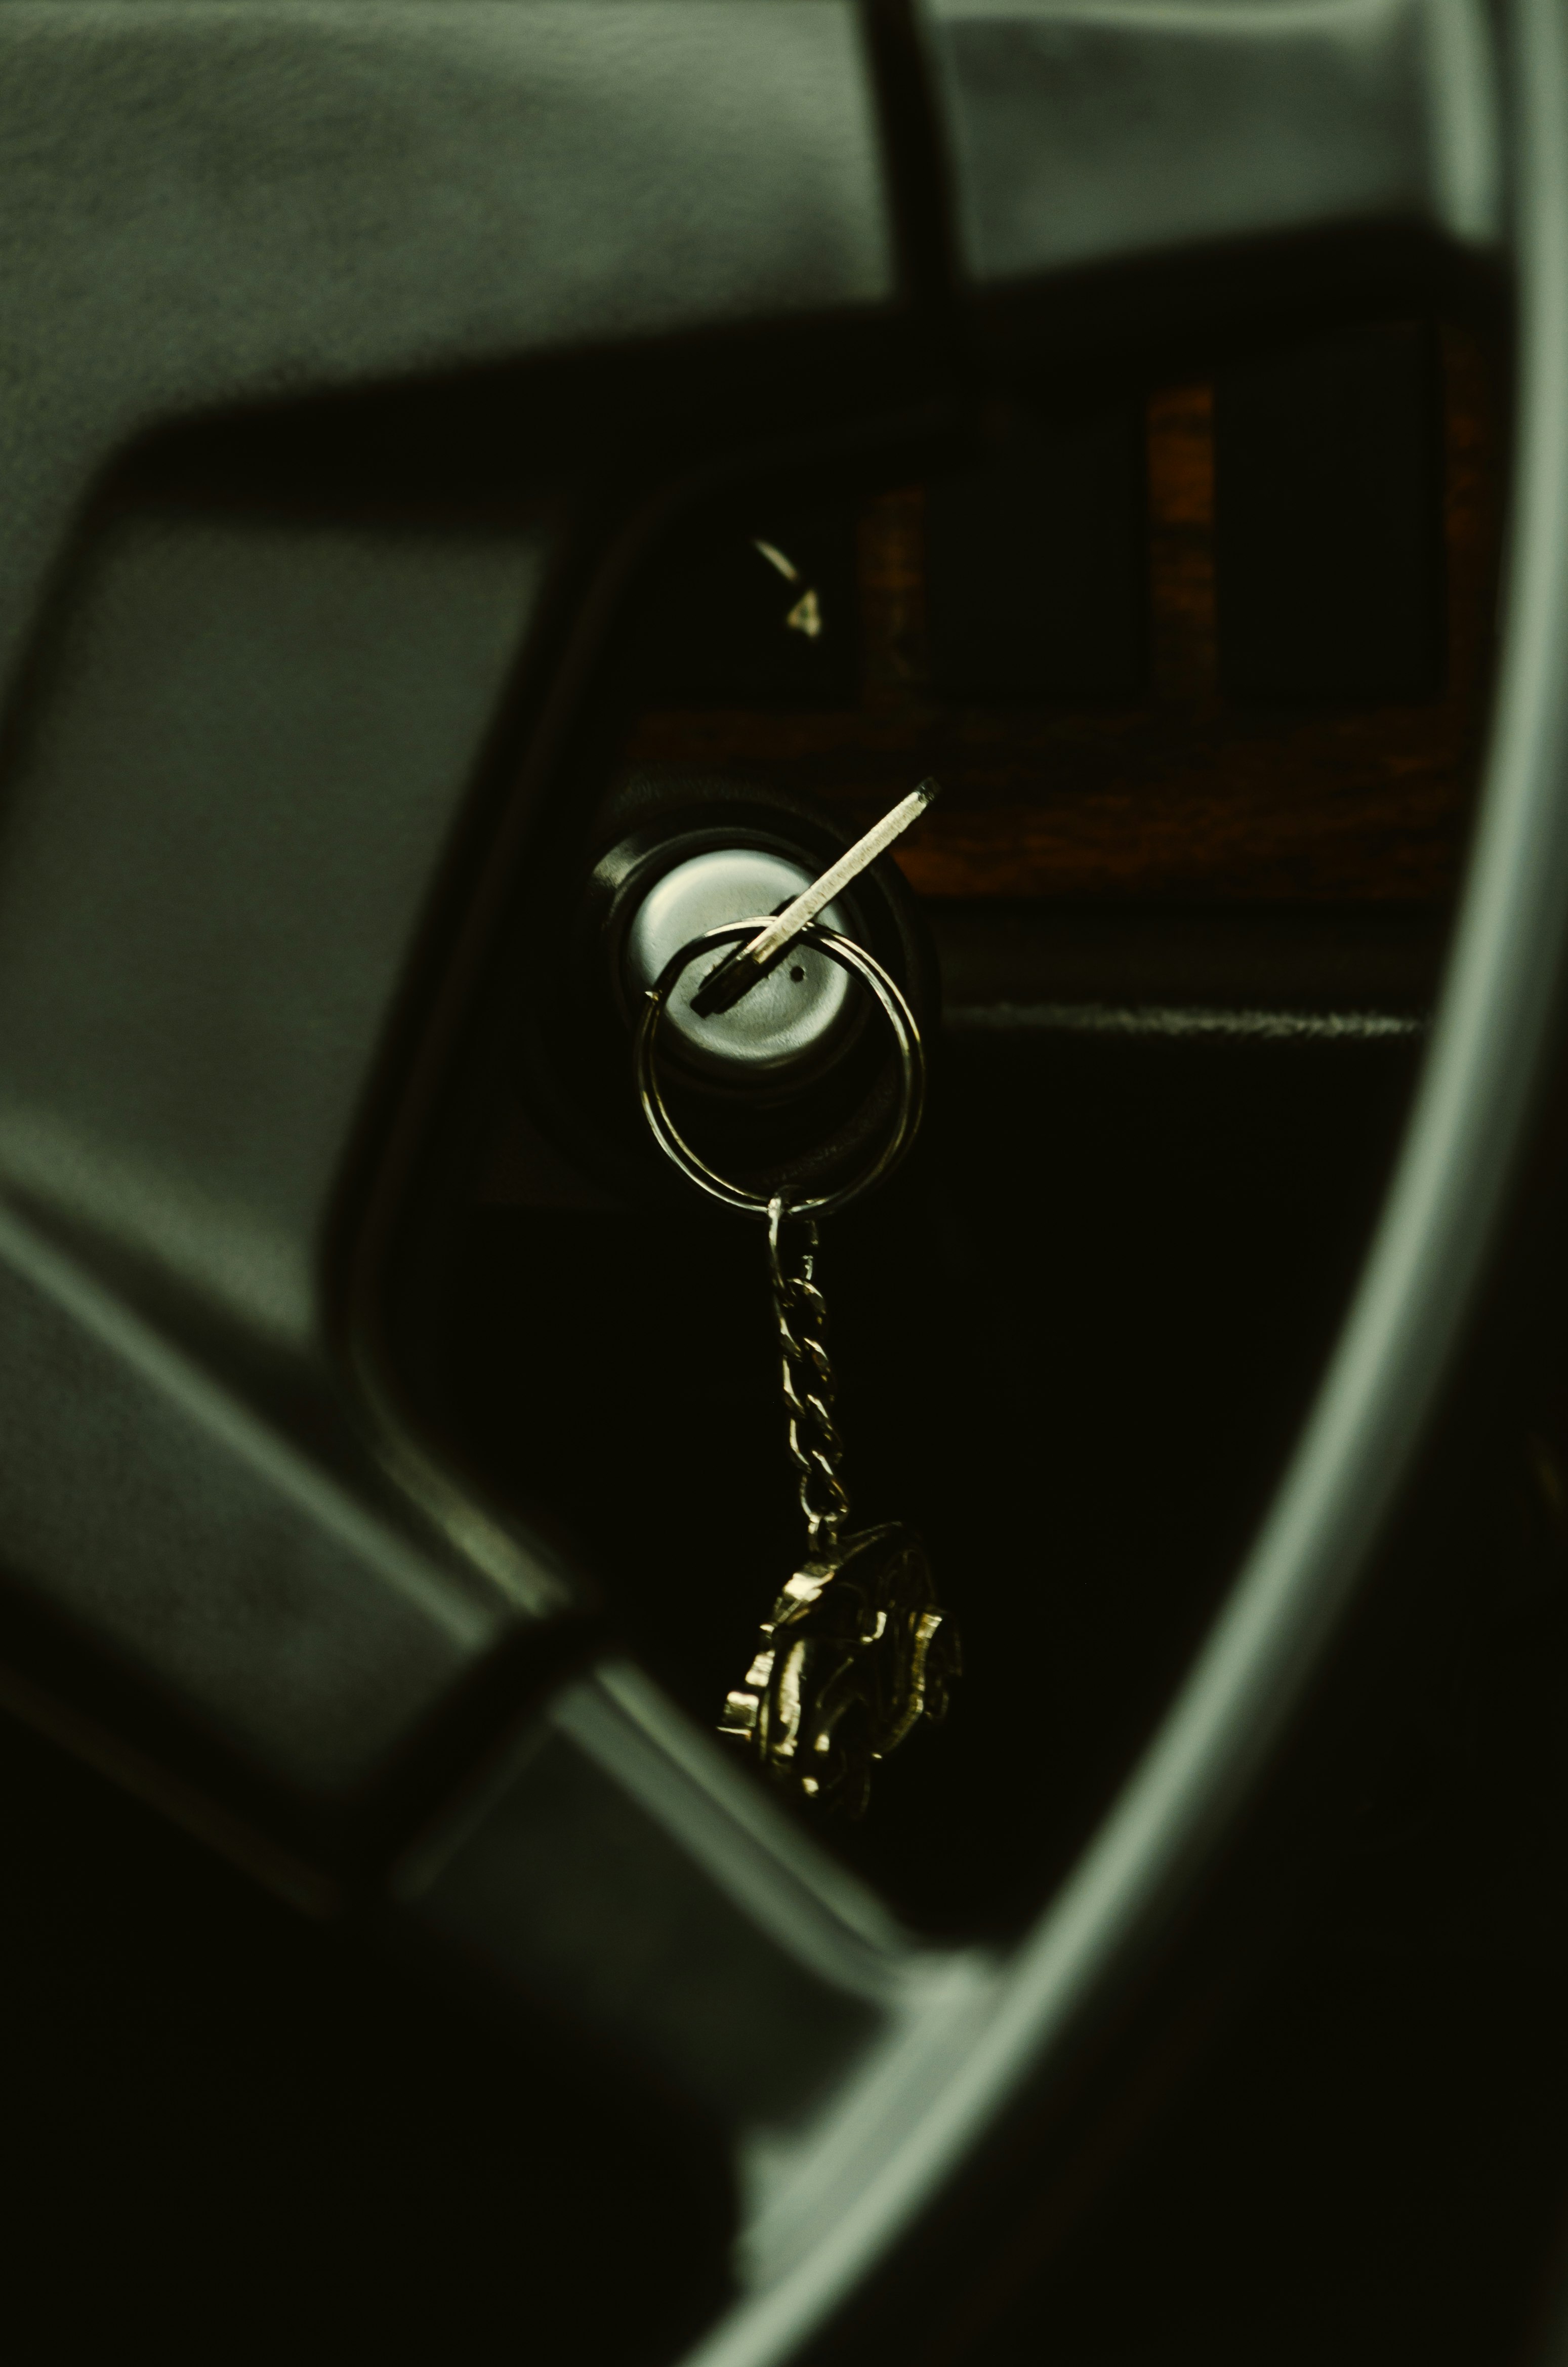 black car steering wheel with silver padlock